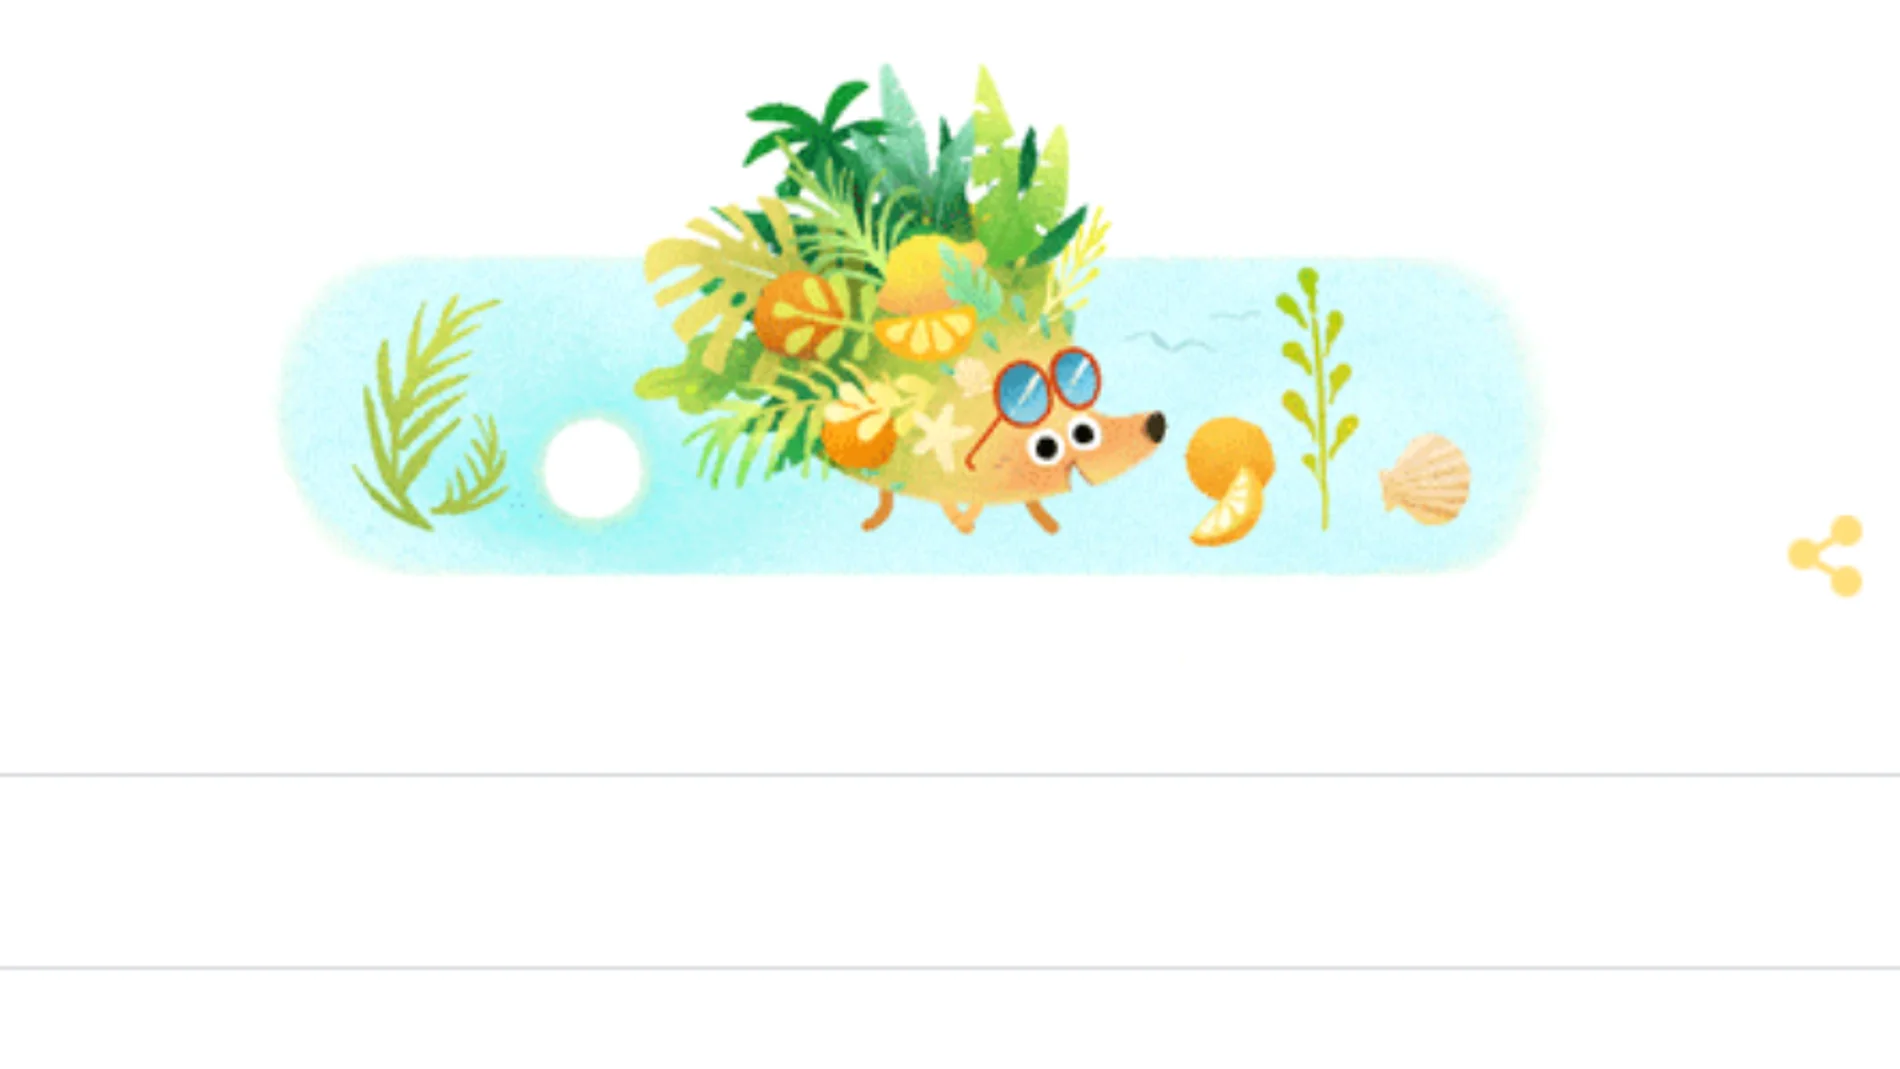 Google celebra la llegada del verano con el doodle de un erizo muy animado